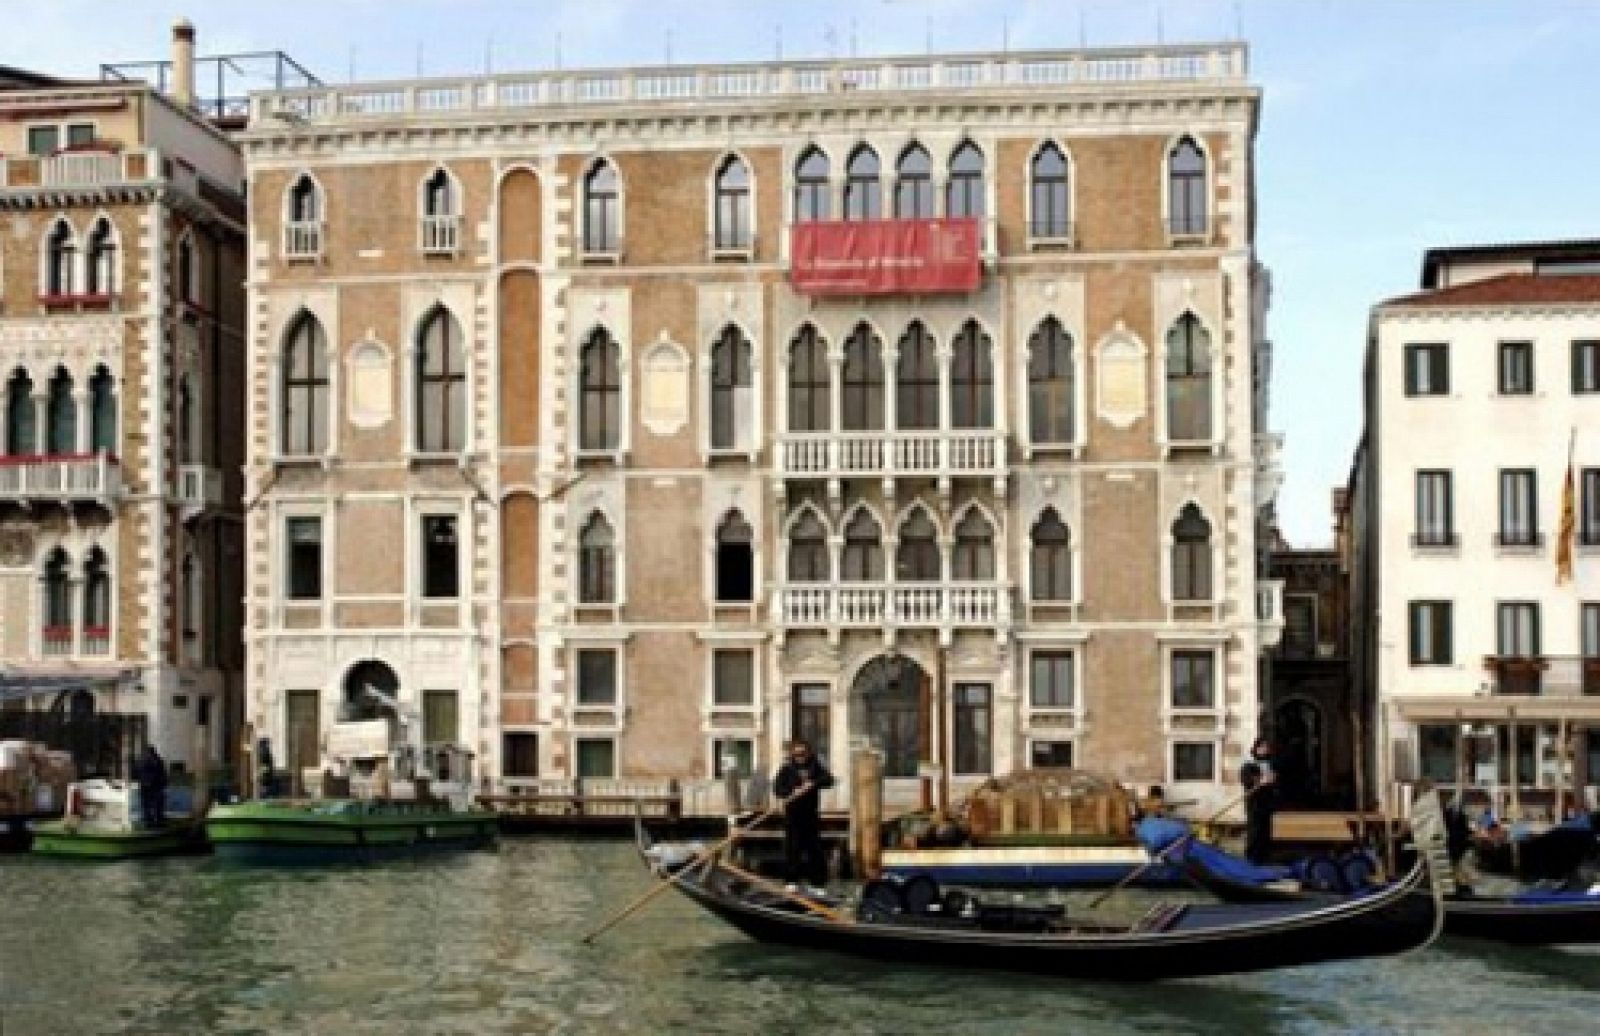 Venecia espera recaudar 20 millones con el nuevo impuesto turístico